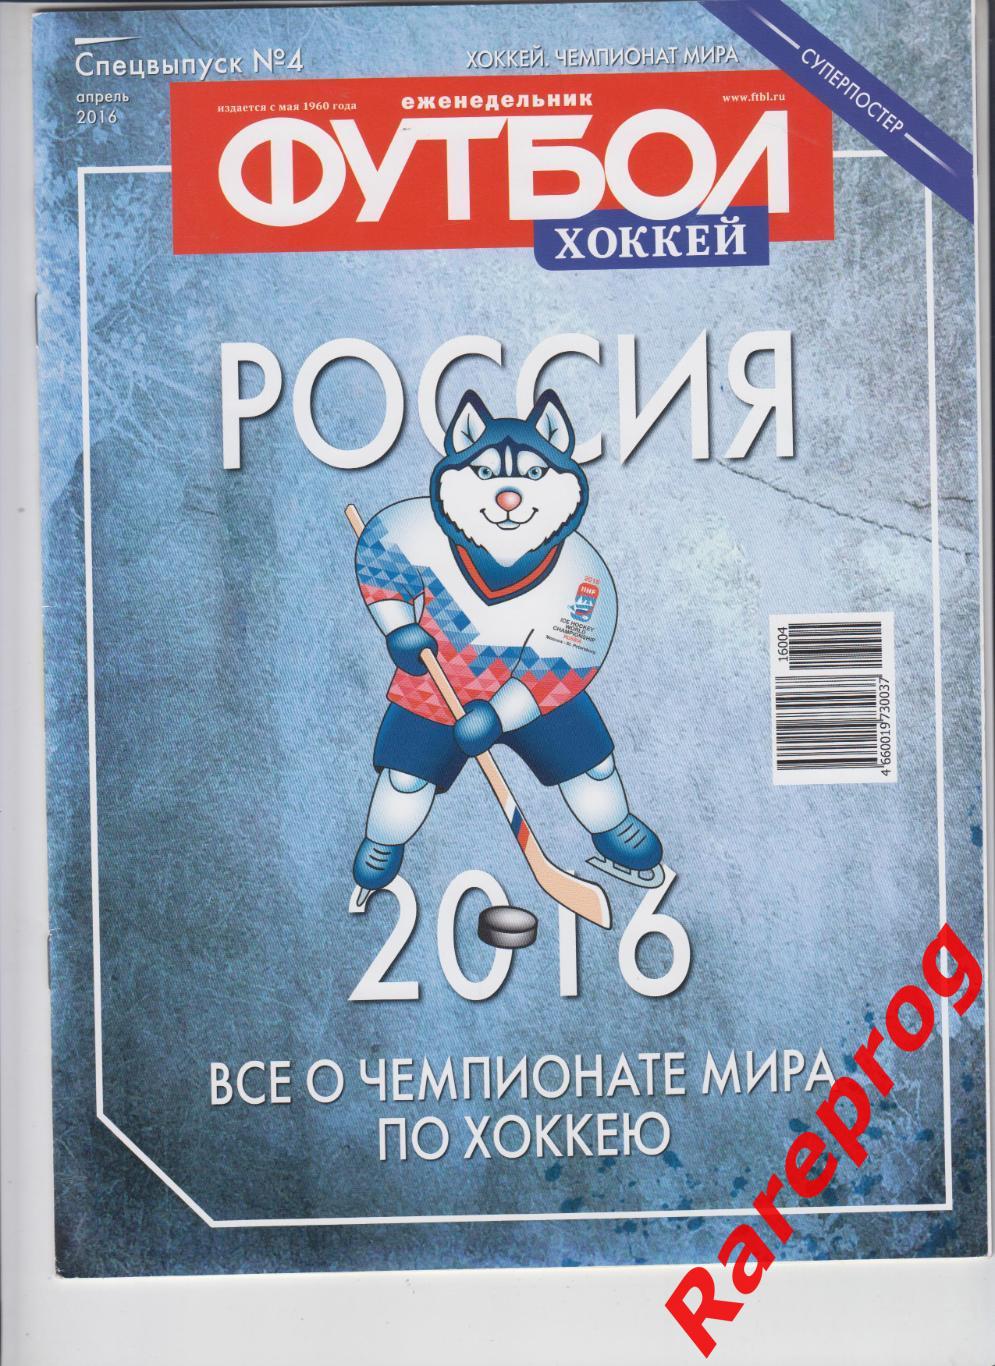 хоккей Чемпионат Мира Россия 2016 - постер Овечкин - Беларусь Казахстан Латвия